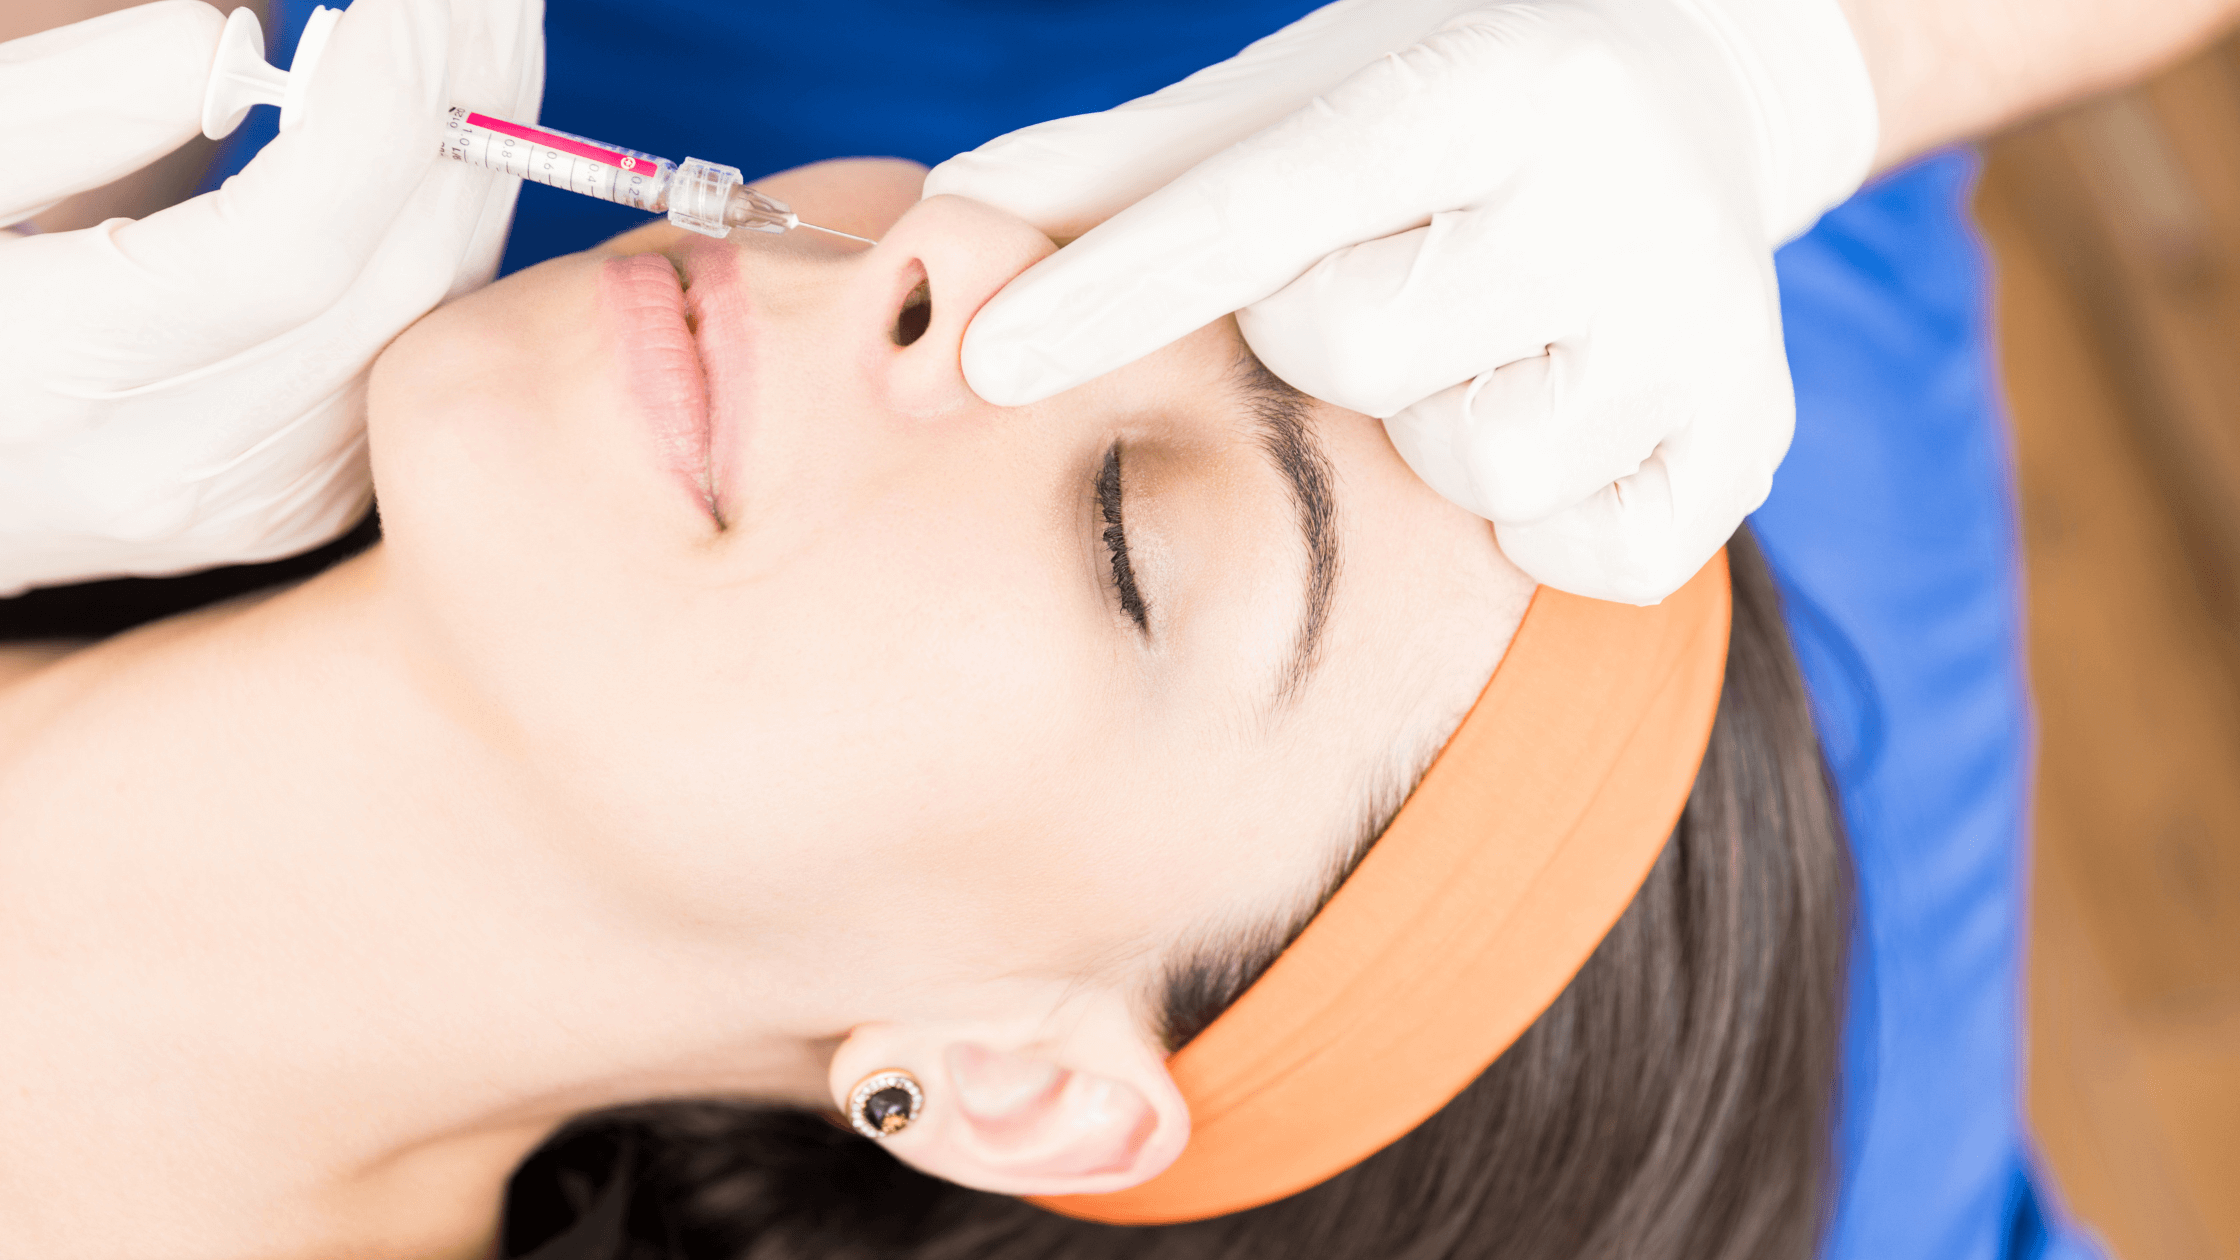 How Do Non-Surgical Nose Jobs Work?